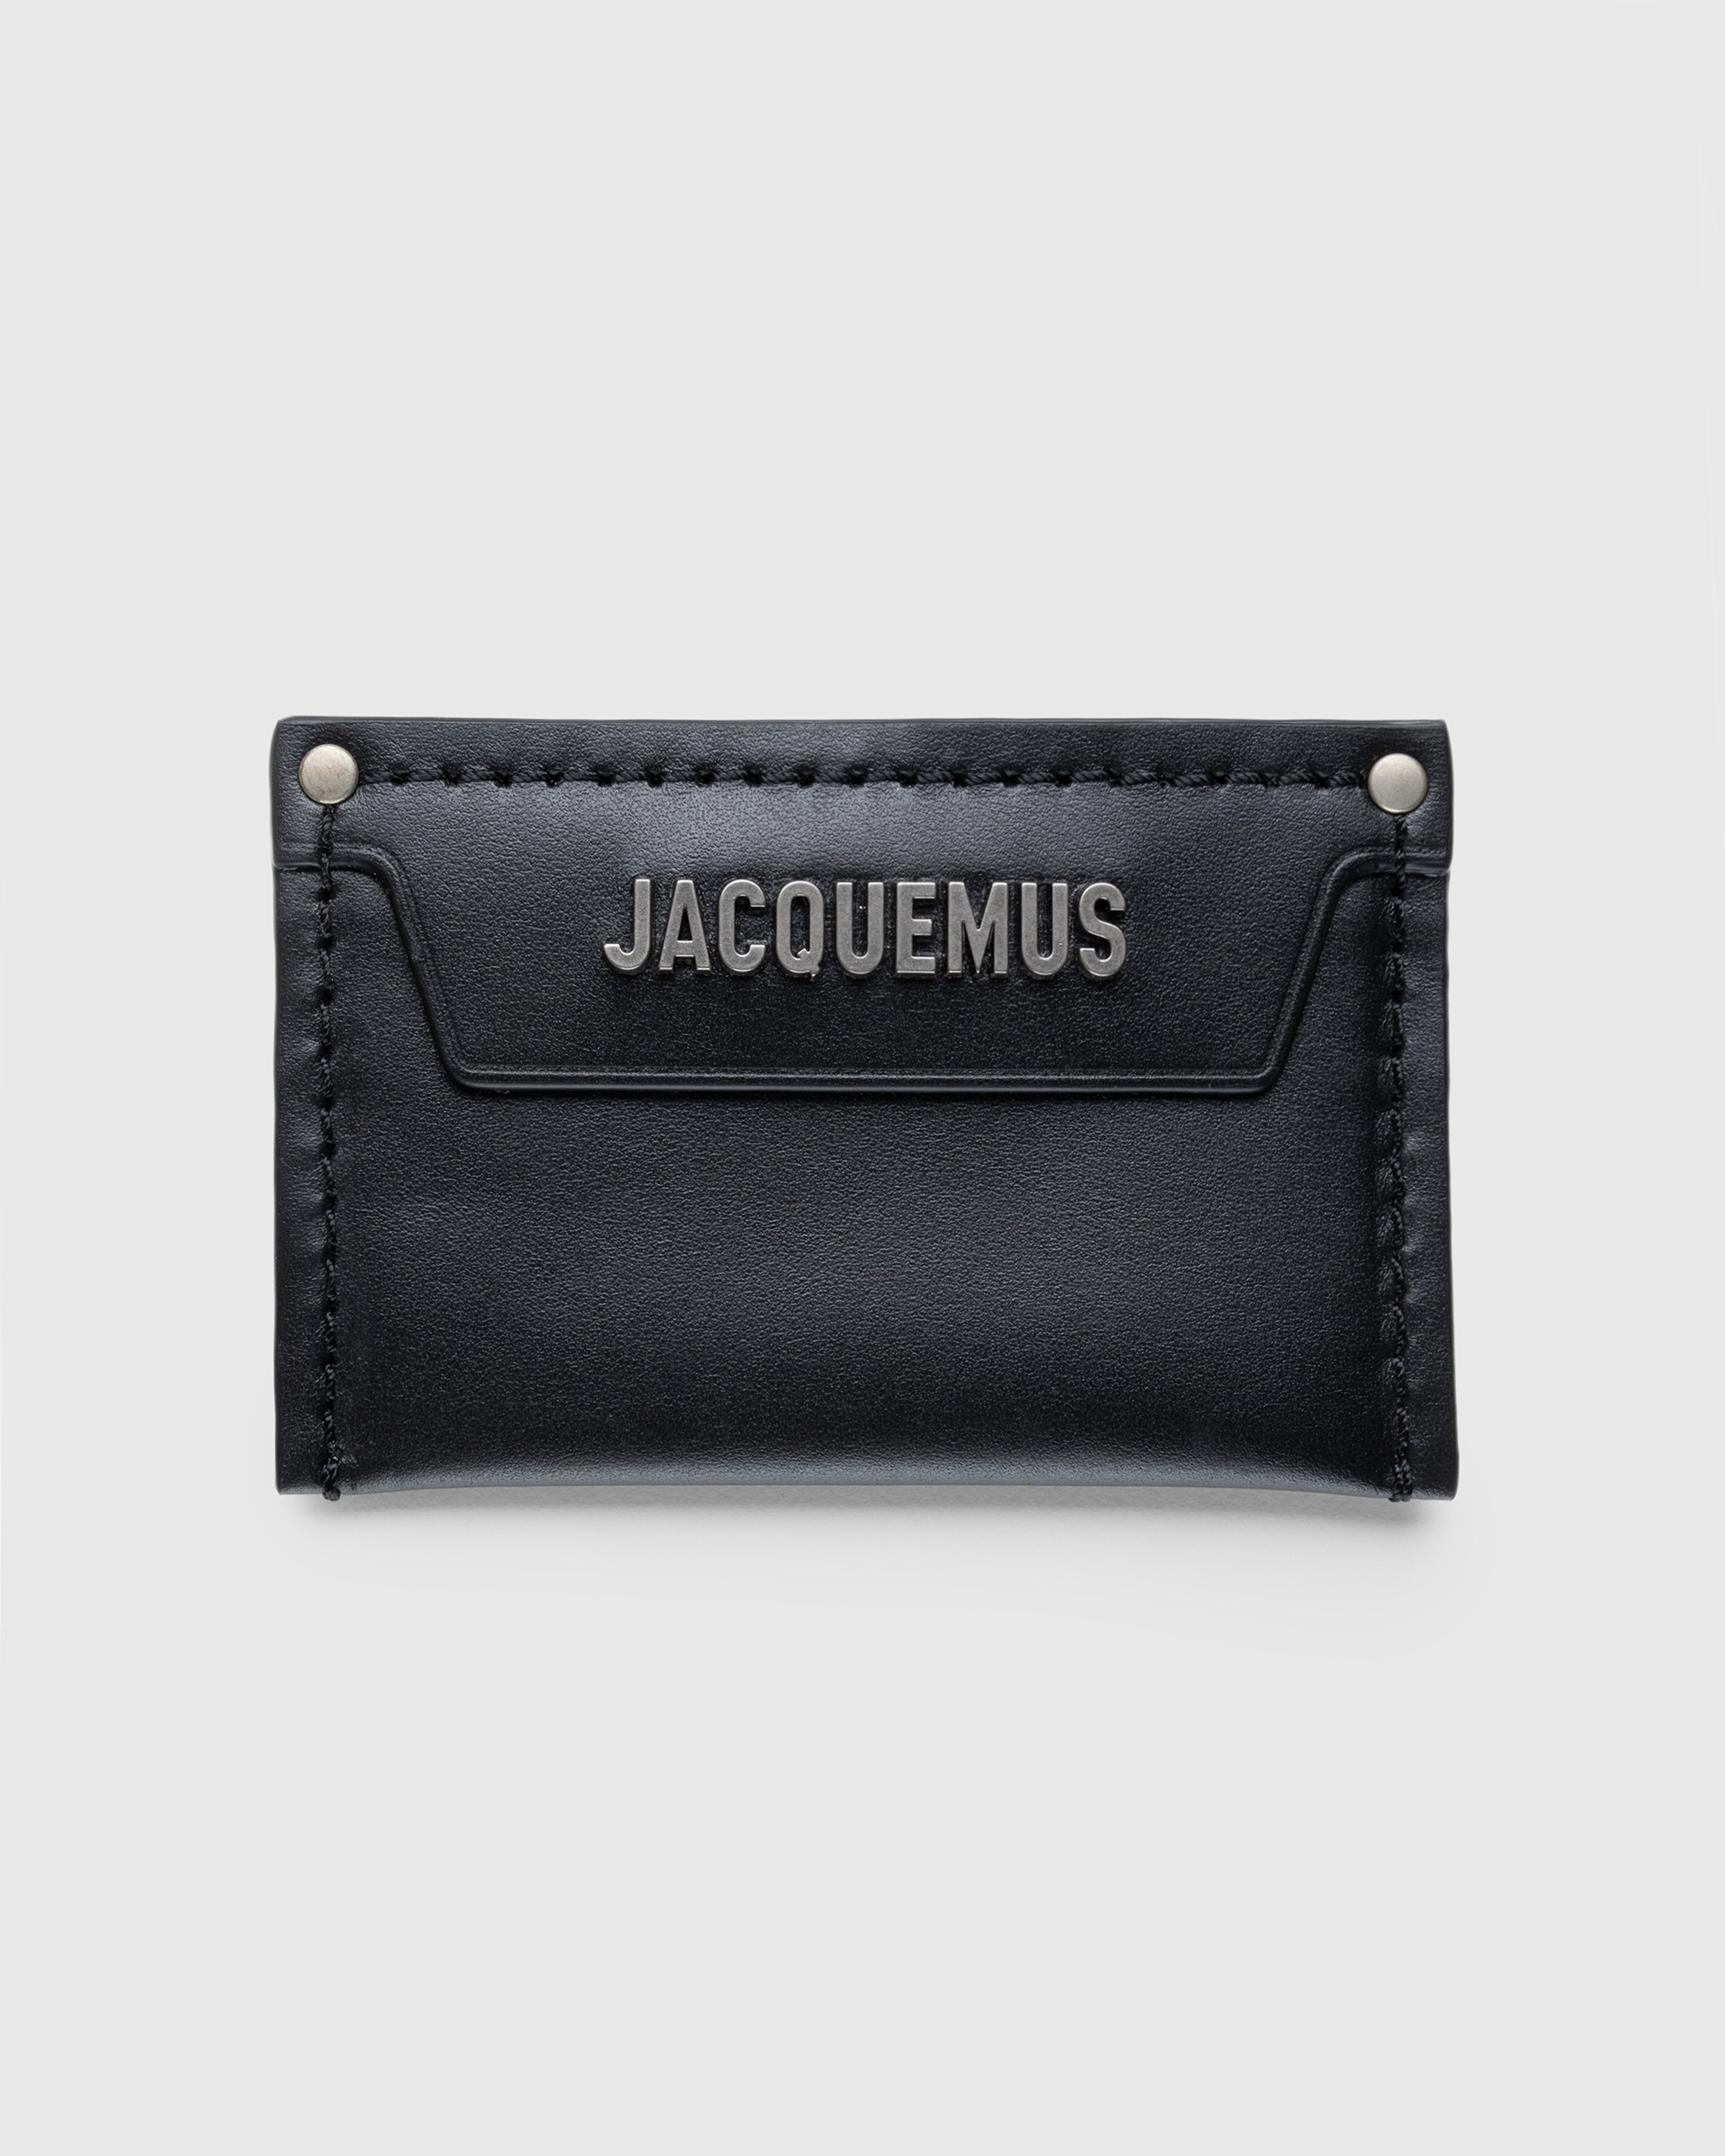 JACQUEMUS - Le Porte Carte Meunier Black - Accessories - BLACK - Image 1